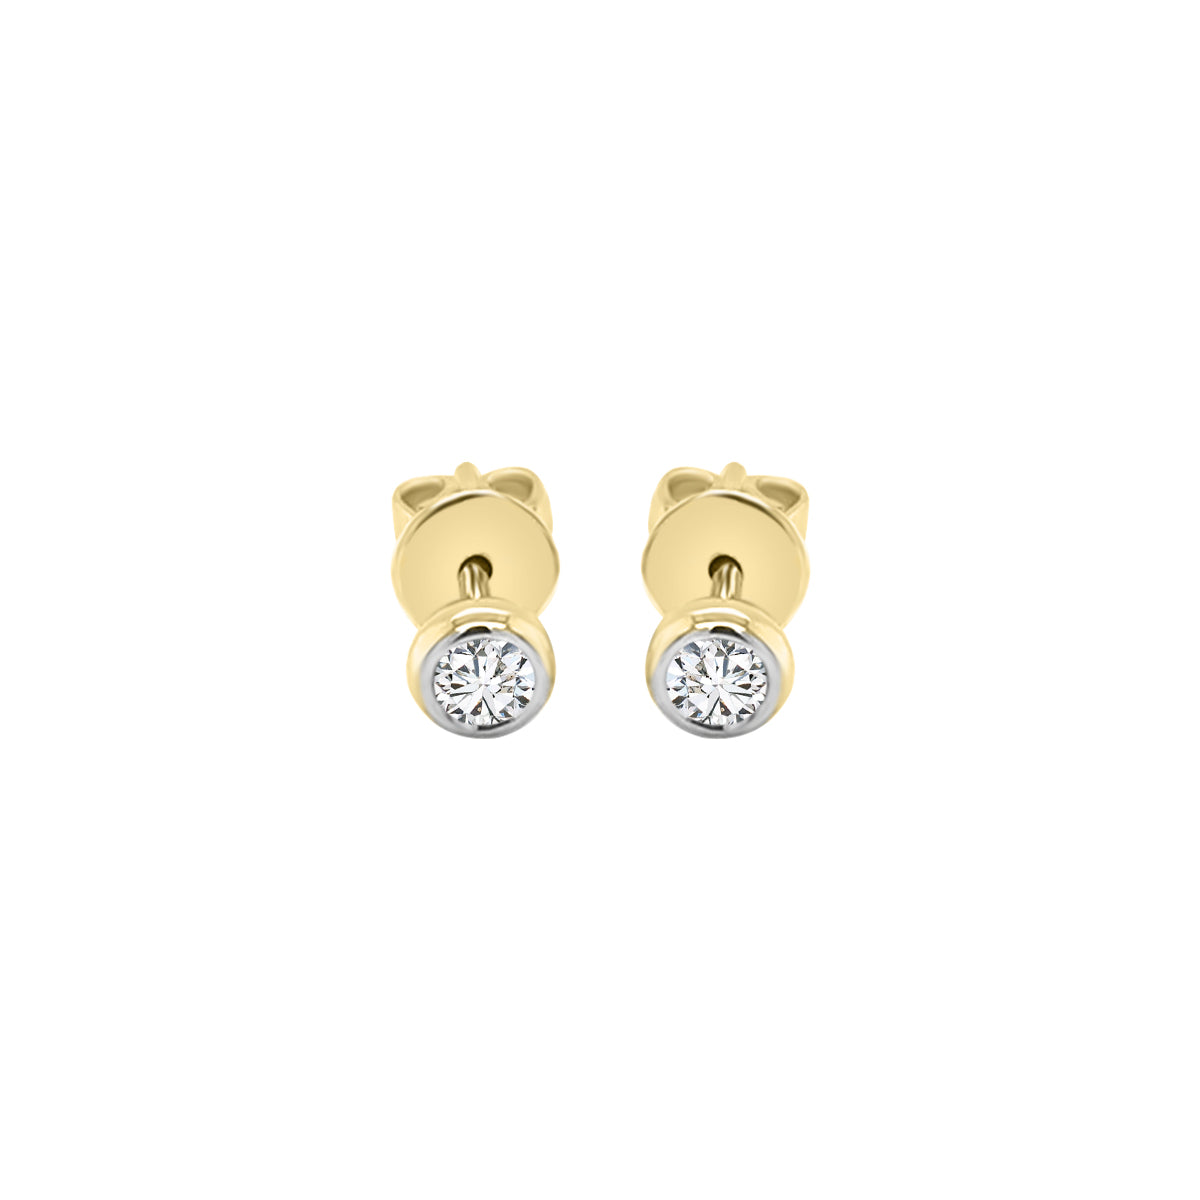 Bezel Set Diamond Stud Earrings In 18k Yellow Gold.